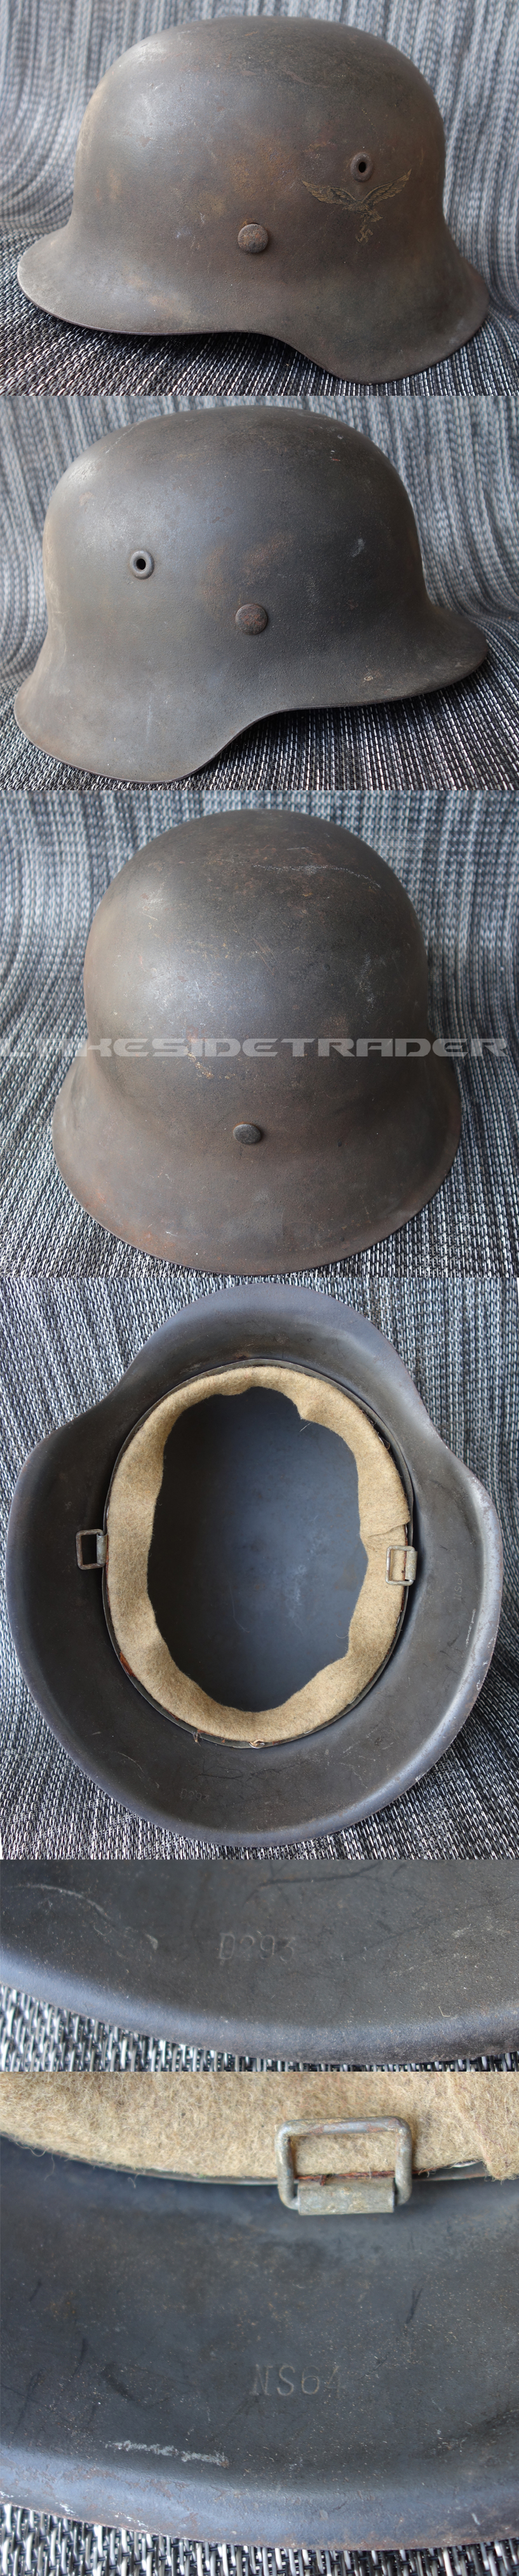 NS64 M42 SD Luftwaffe Helmet